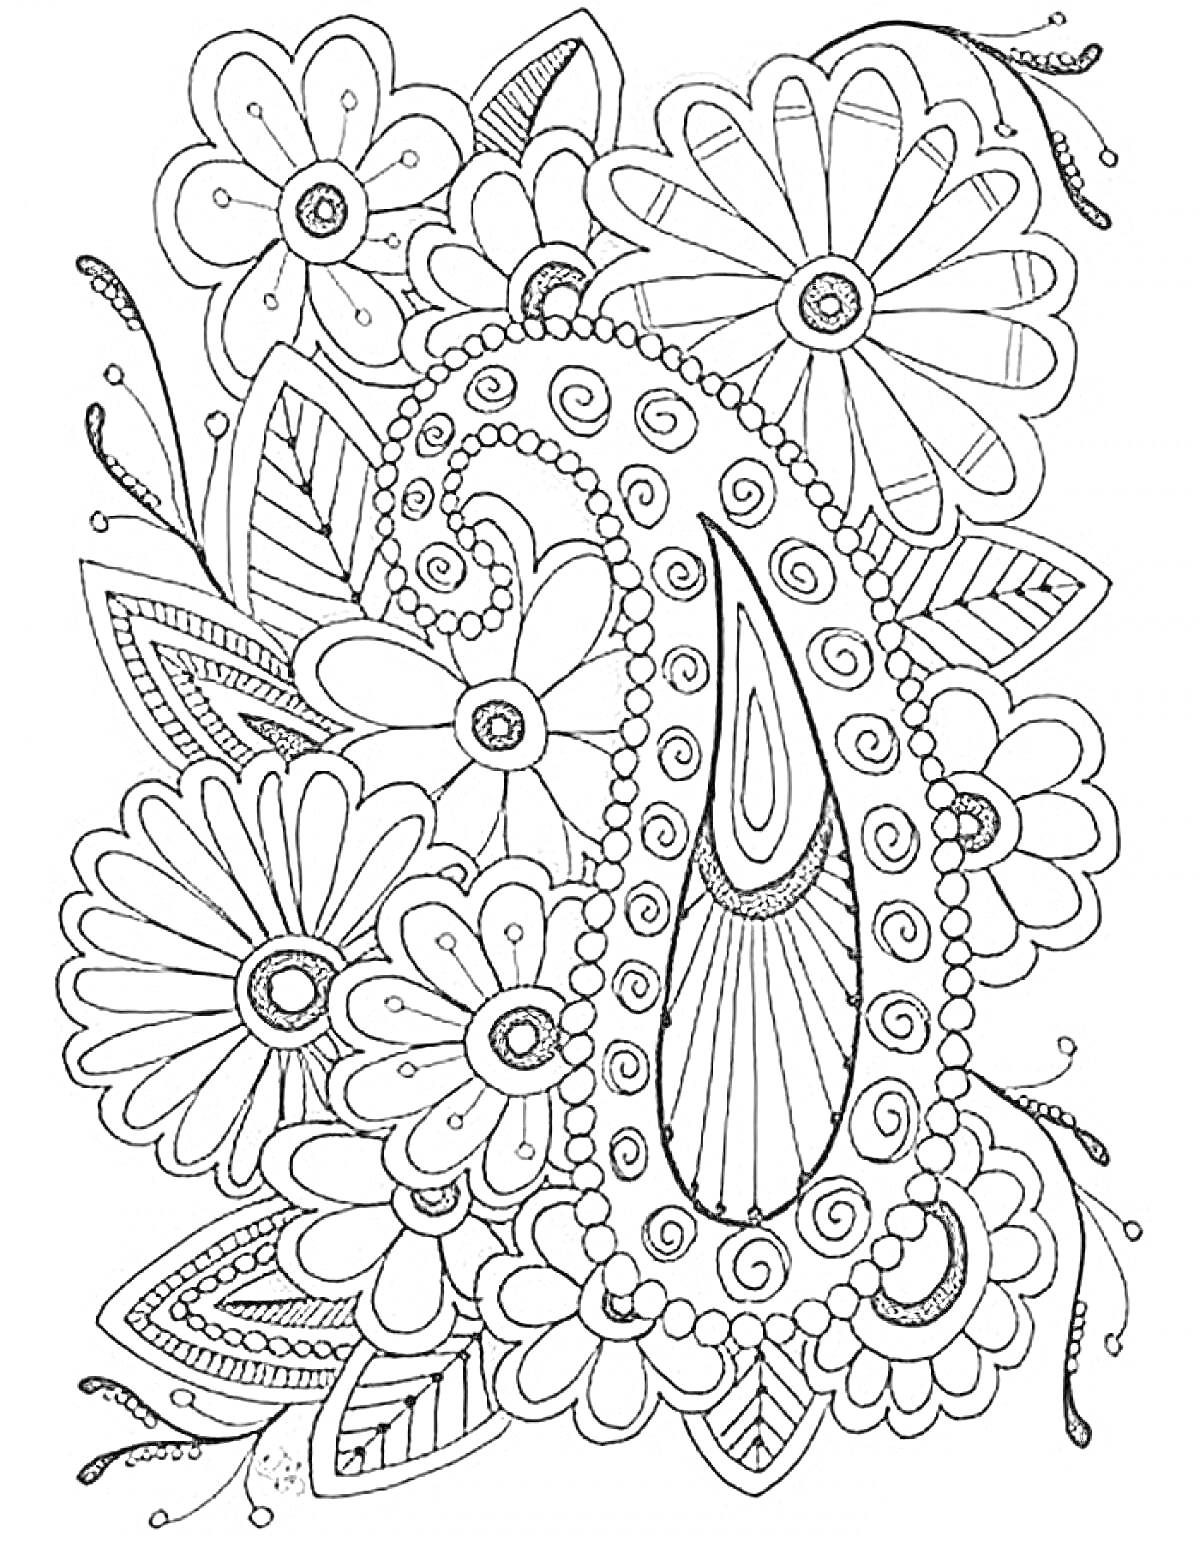 Раскраска Узоры с цветами и элементами огурца (пейсли)